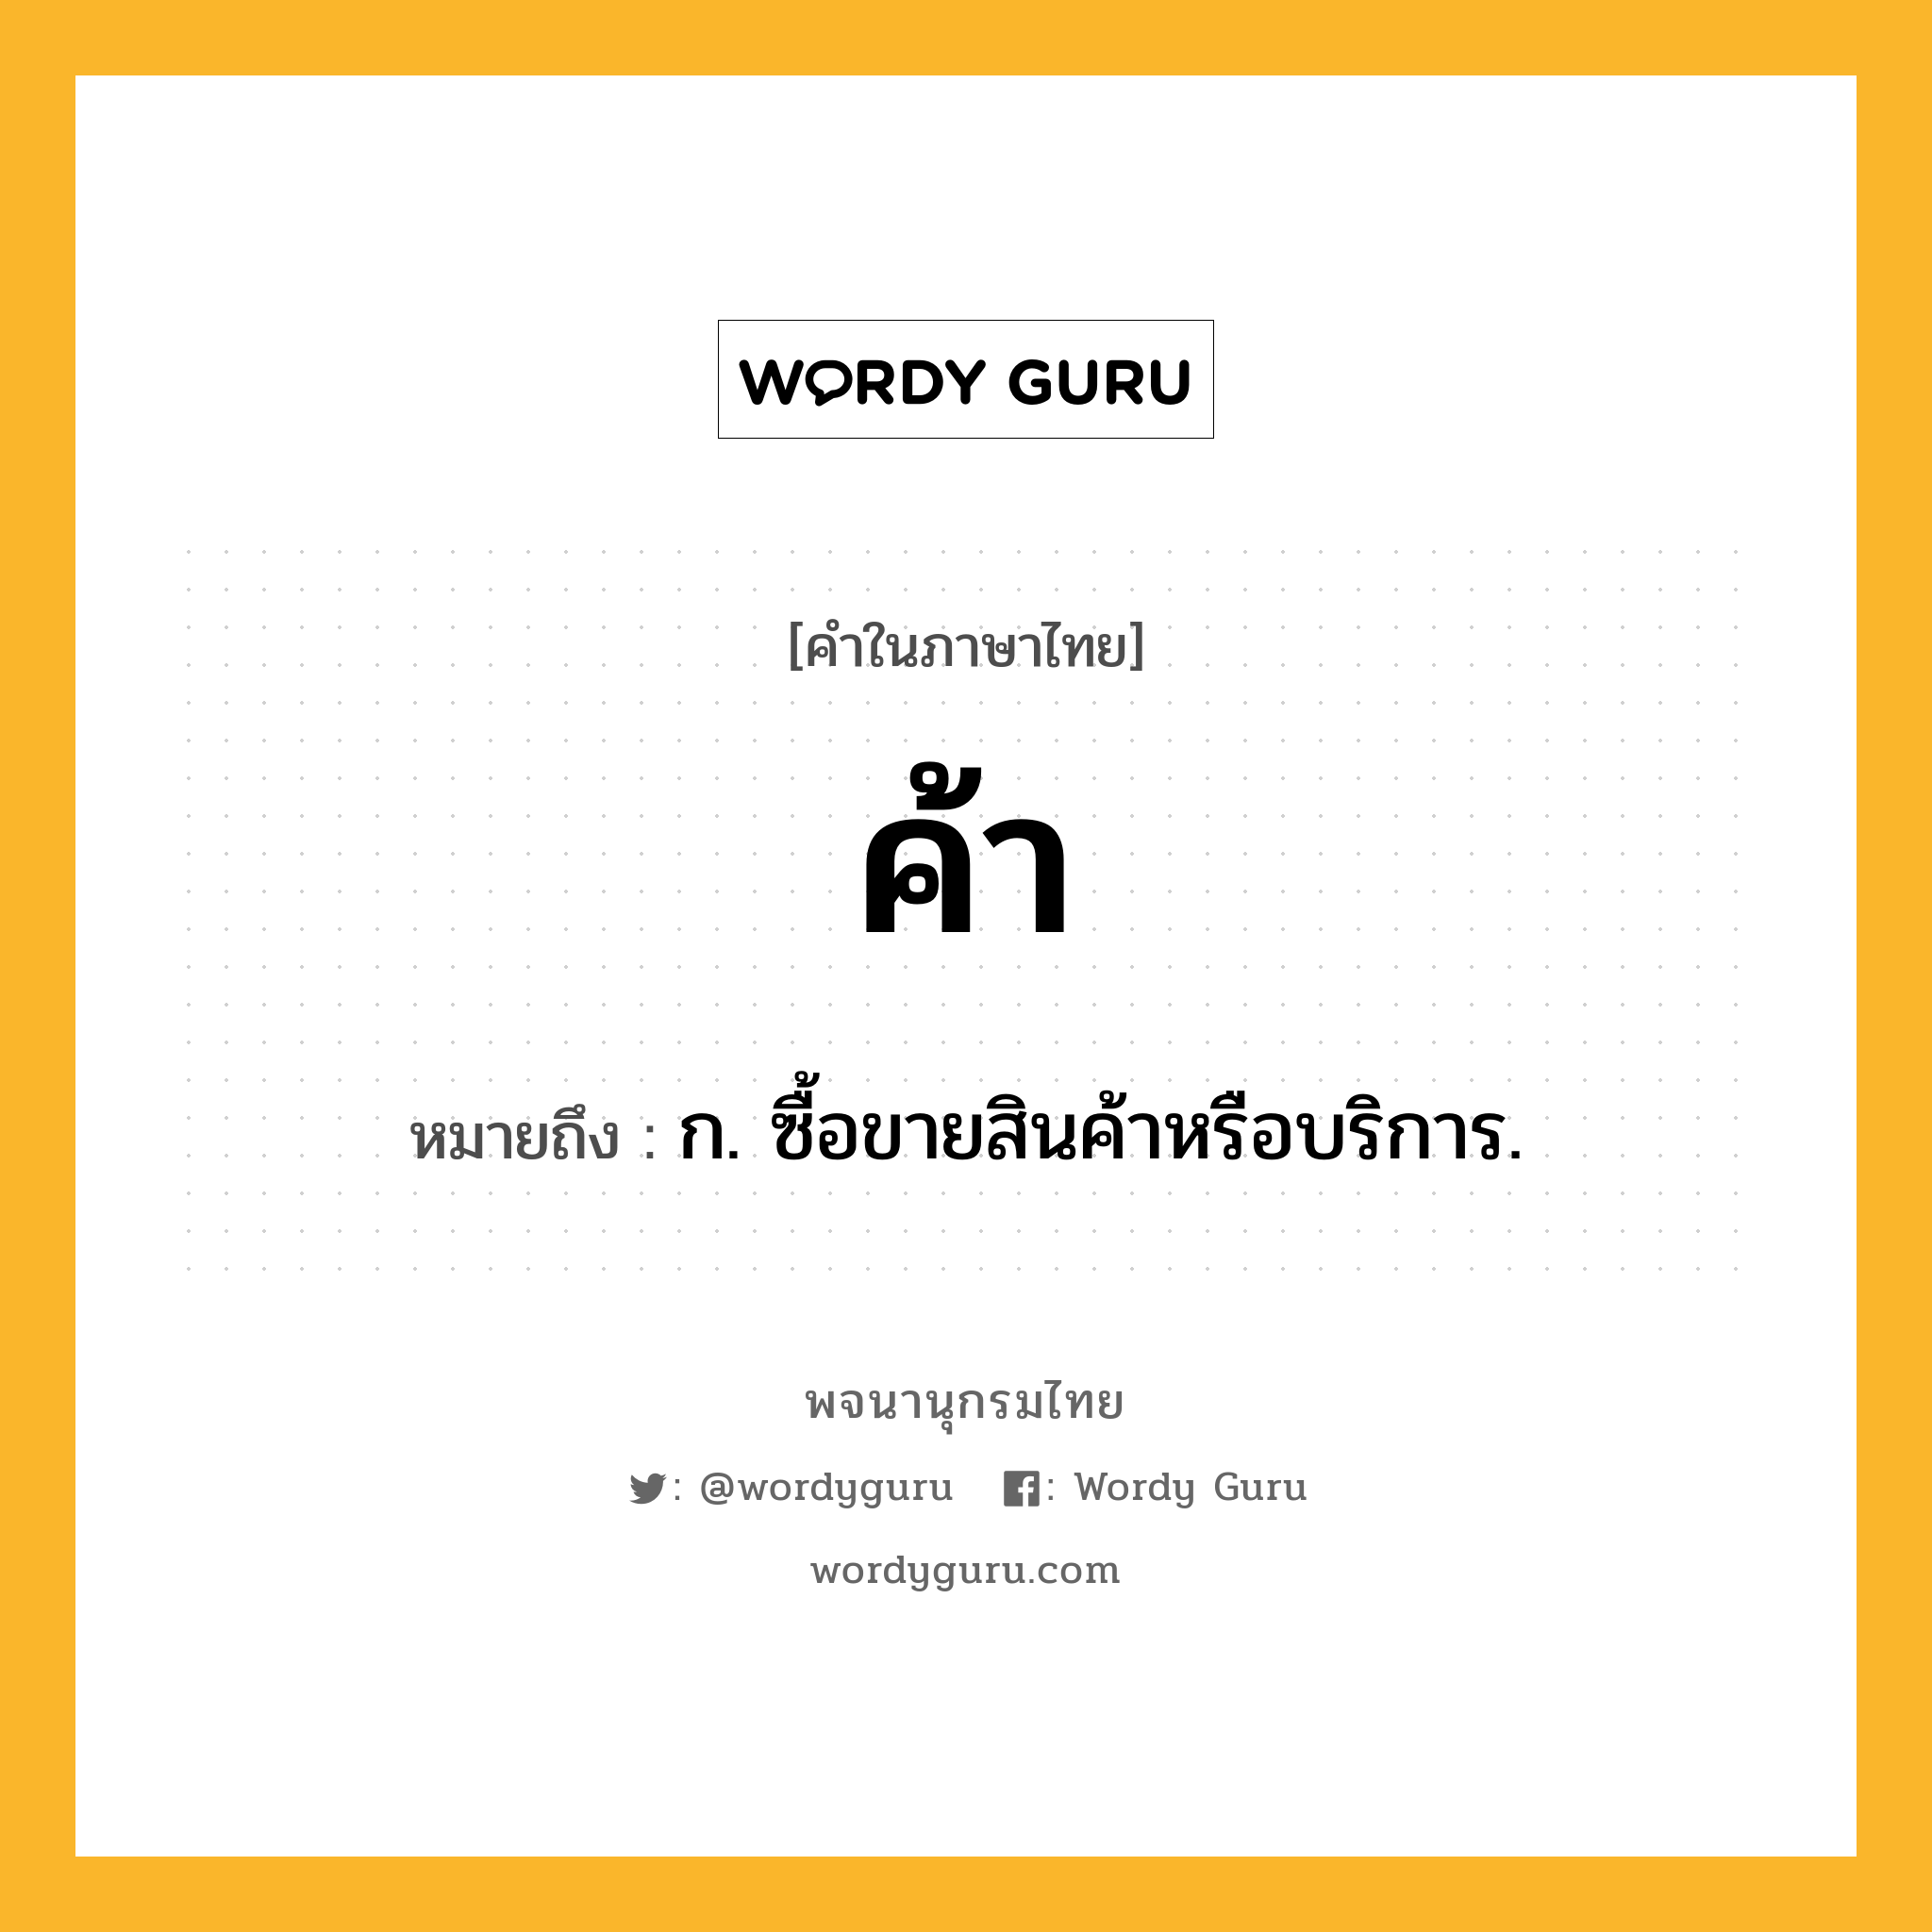 ค้า หมายถึงอะไร?, คำในภาษาไทย ค้า หมายถึง ก. ซื้อขายสินค้าหรือบริการ.